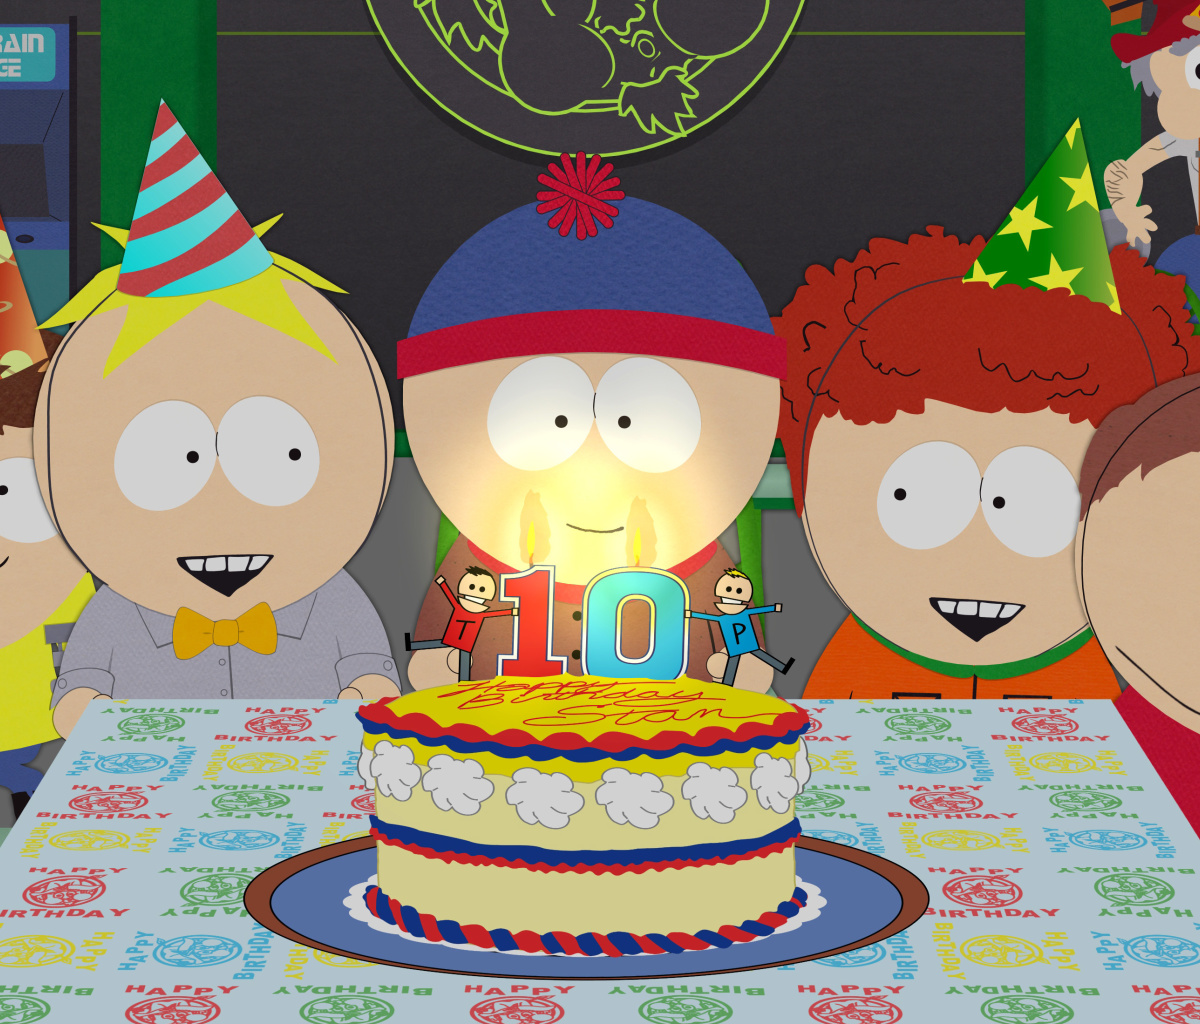 South Park Season 15 Stans Party screenshot #1 1200x1024